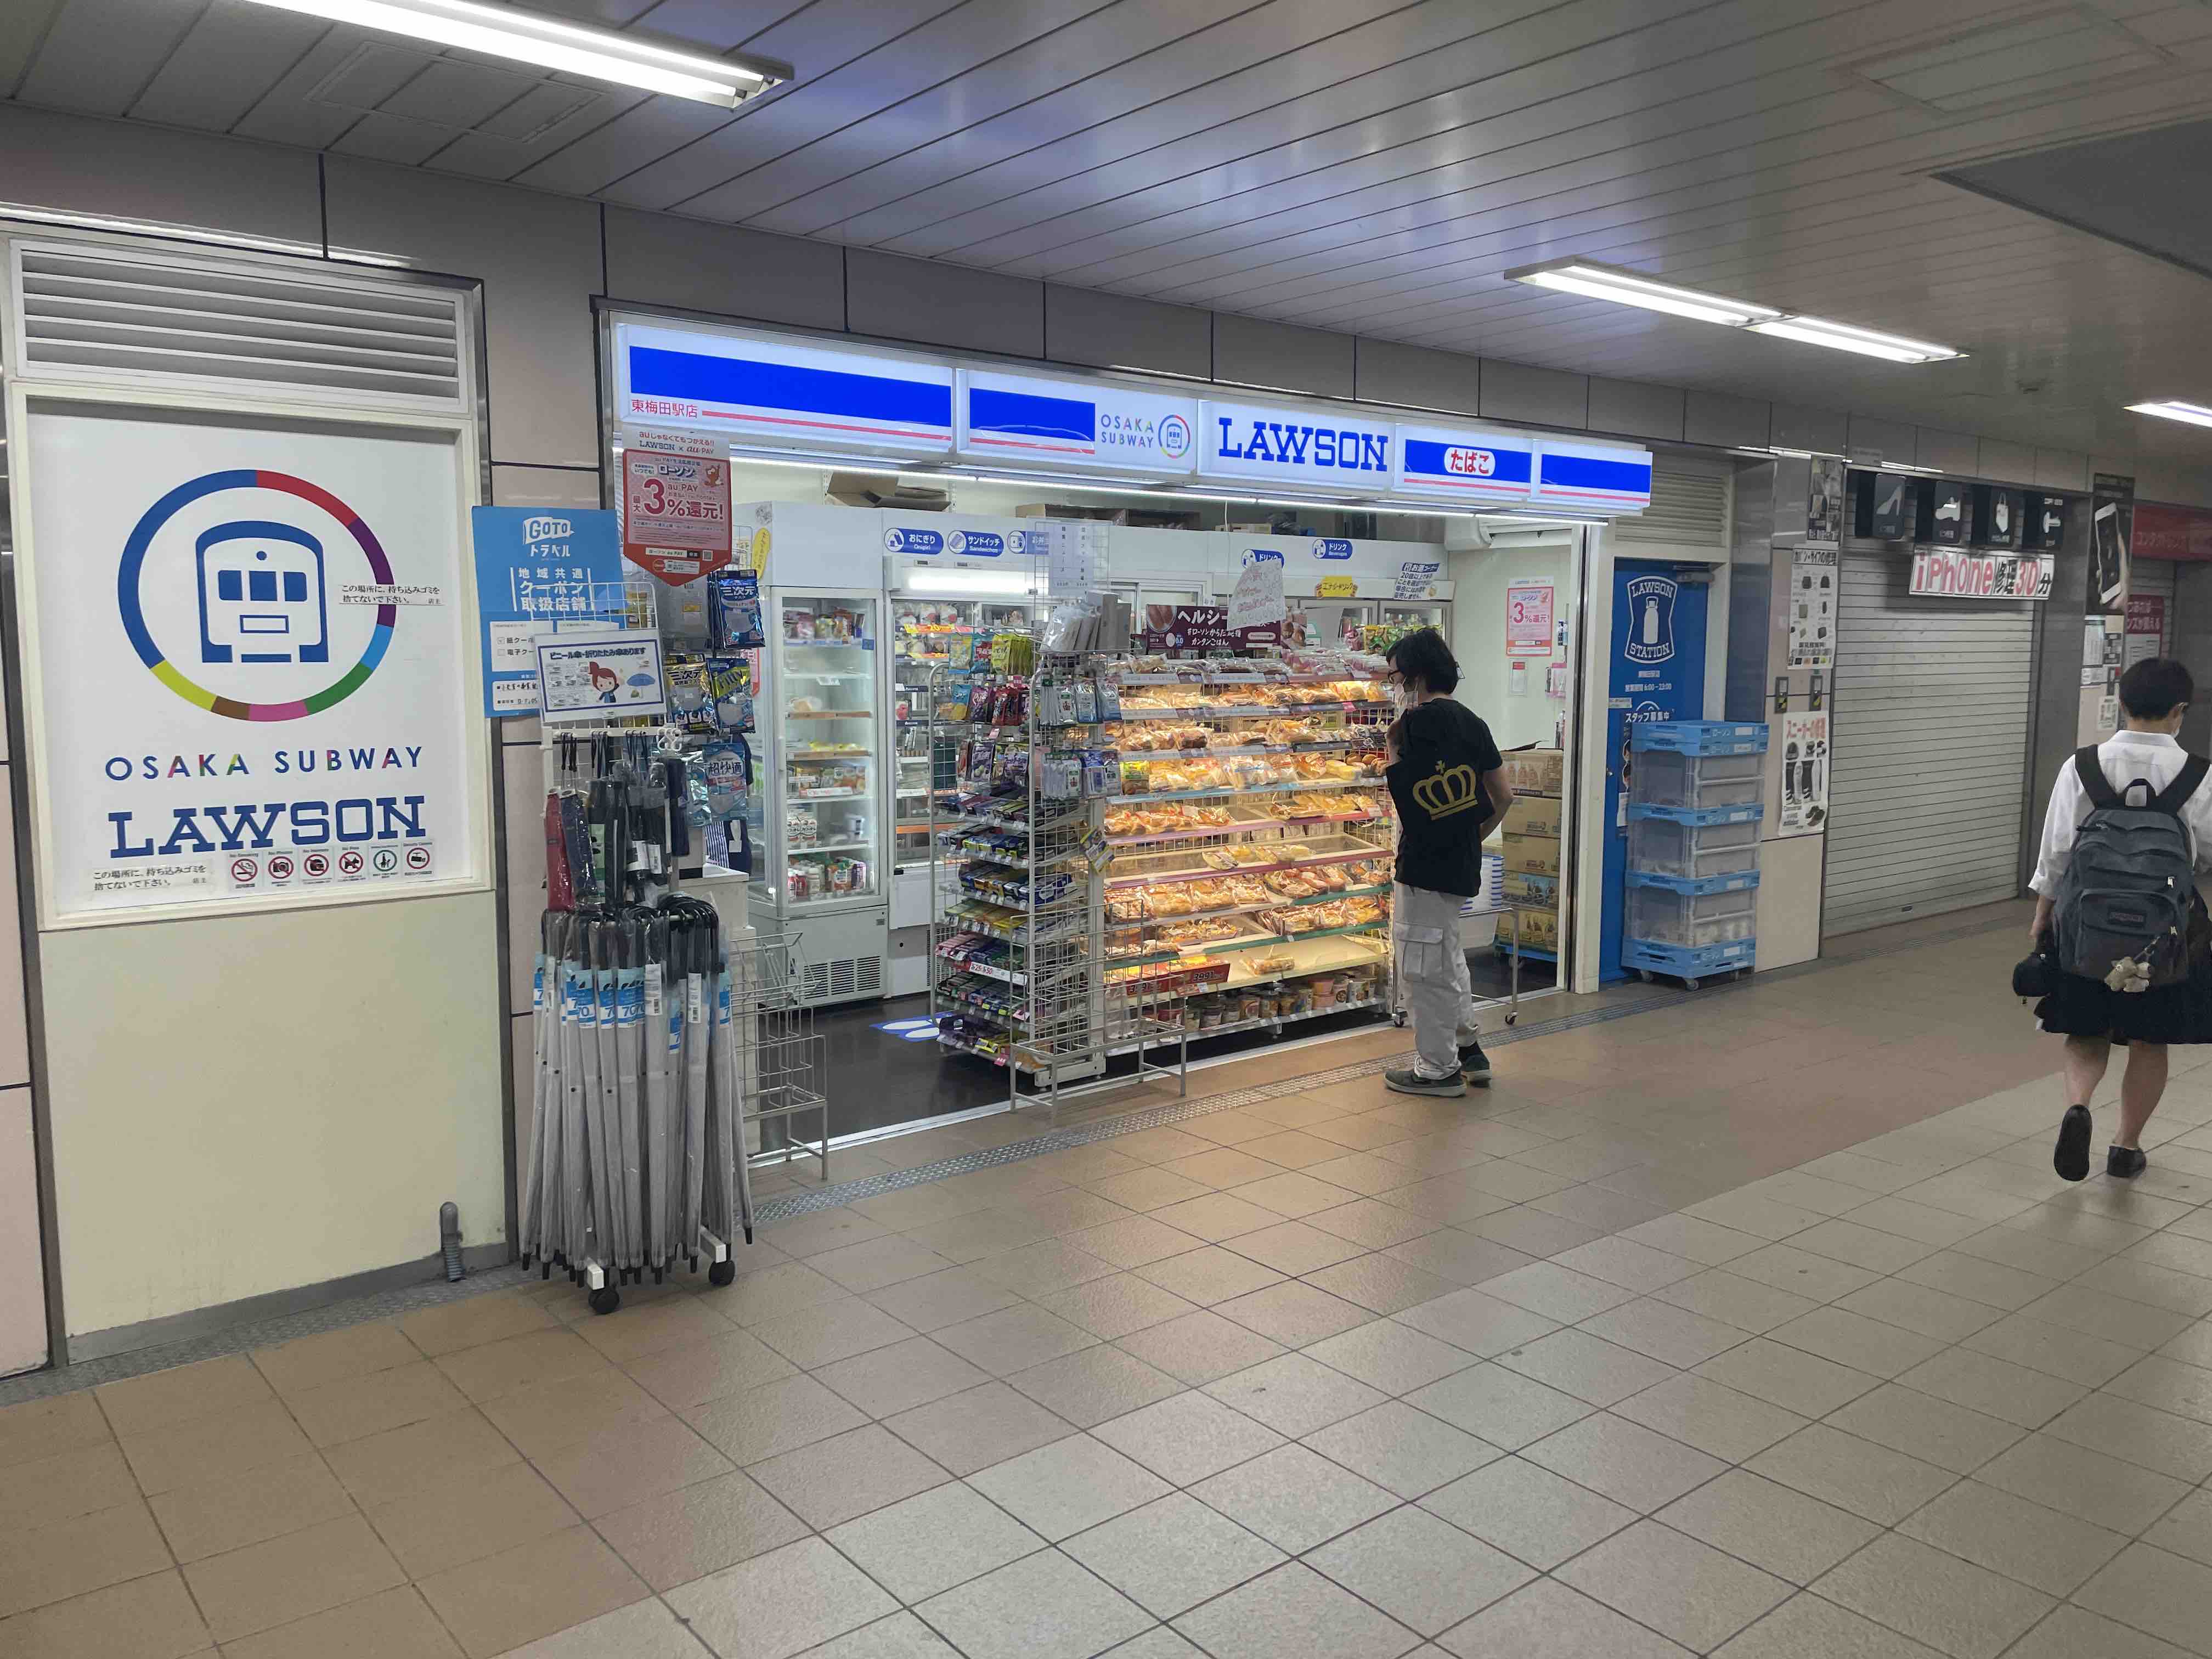 大阪で中日スポーツが買える店 地下鉄東梅田駅構内のローソン 21年 Masaruのブログ